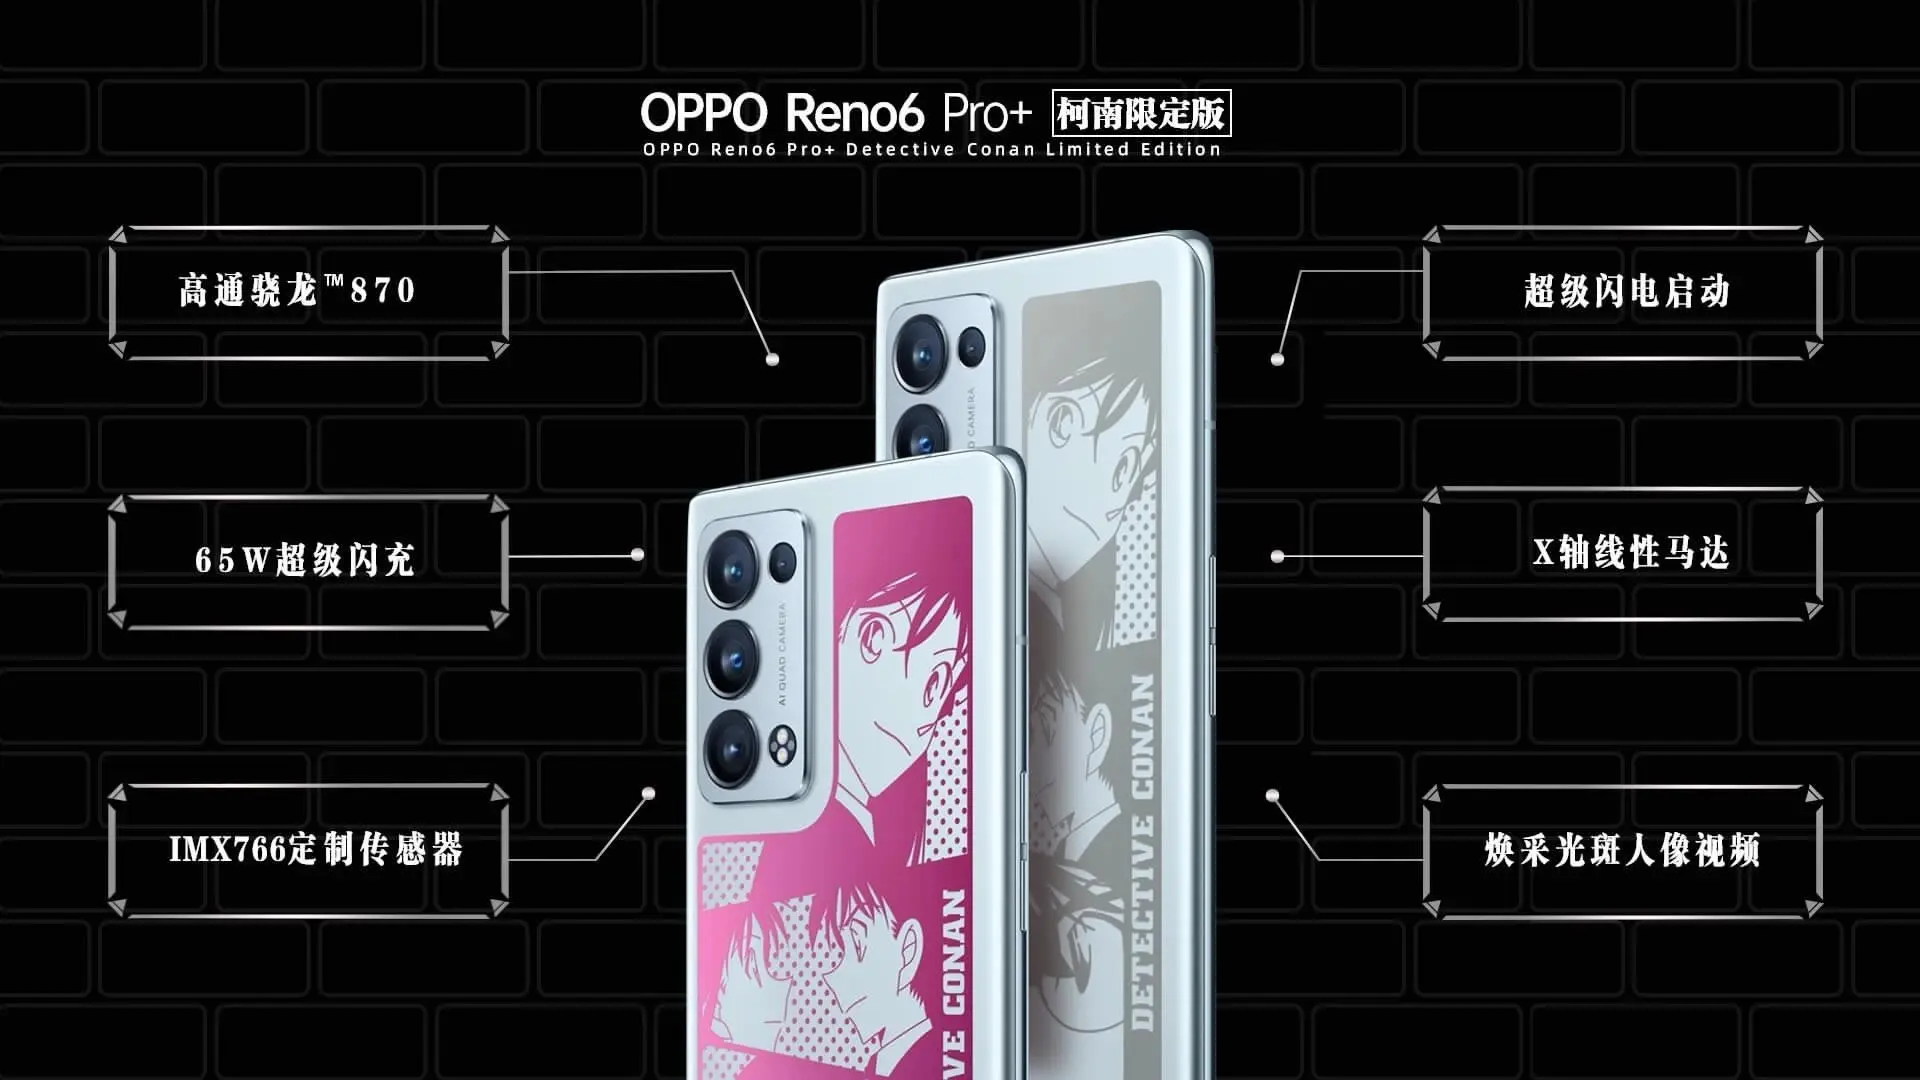 OPPO presenta un smartphone basado en el manga Detective Conan